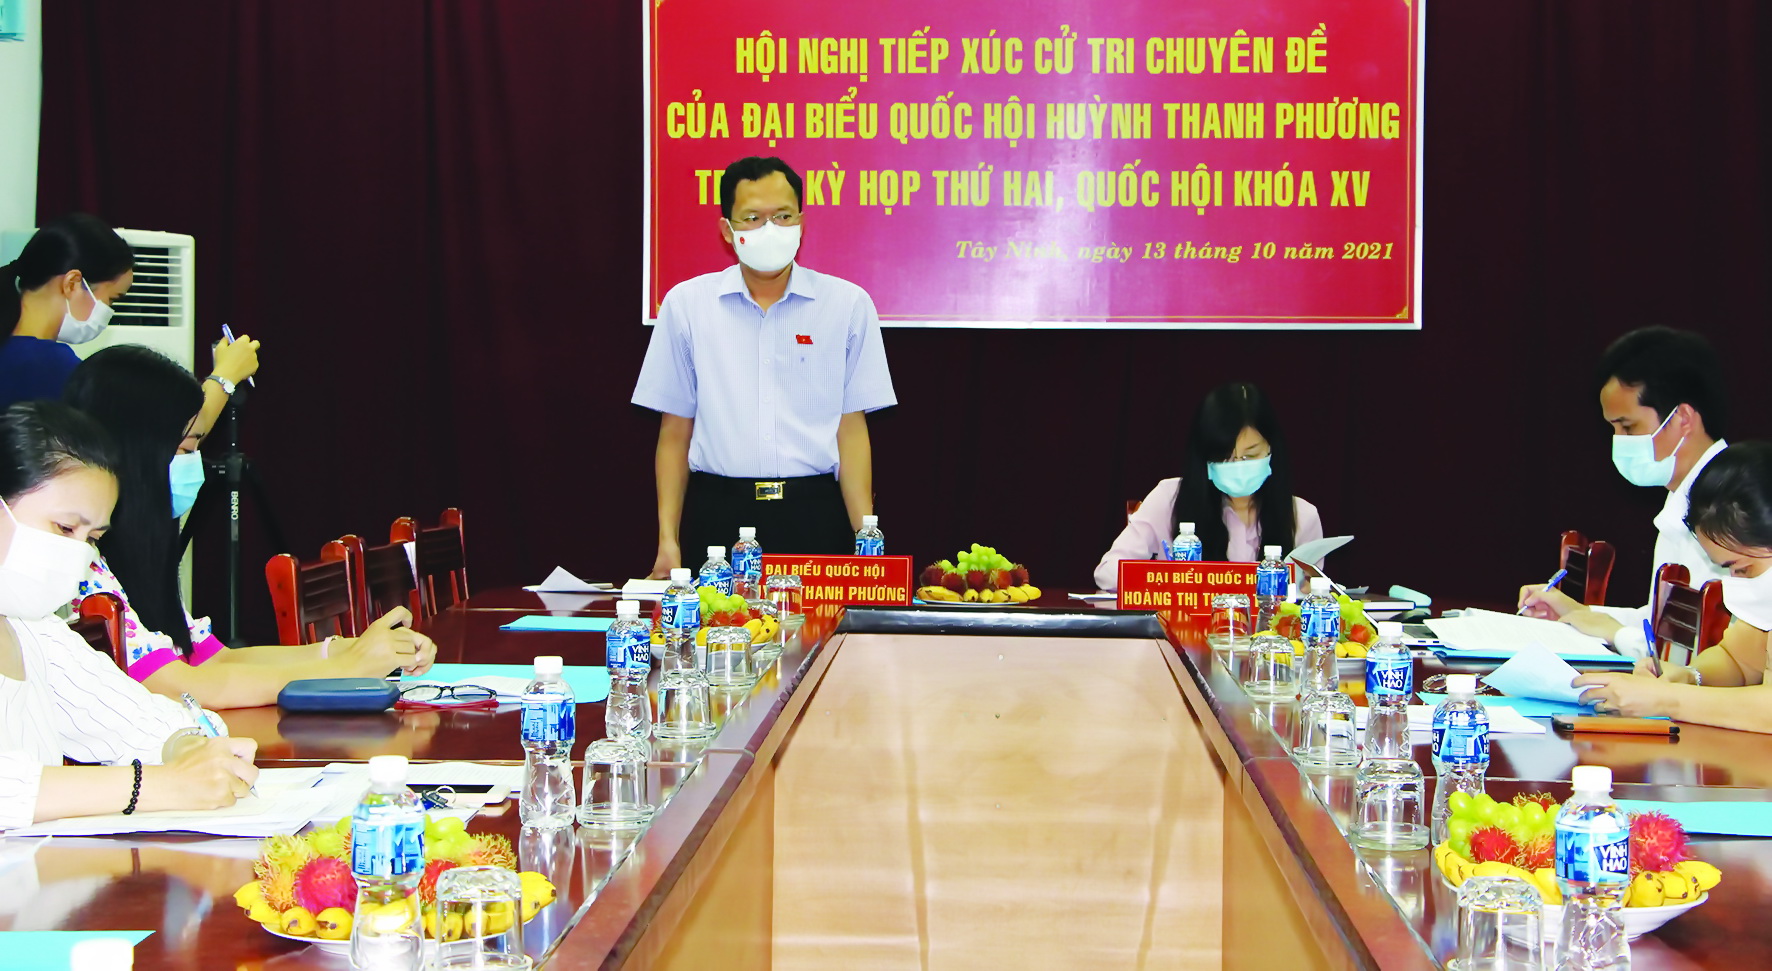 Điểm báo in Tây Ninh ngày 16.10.2021